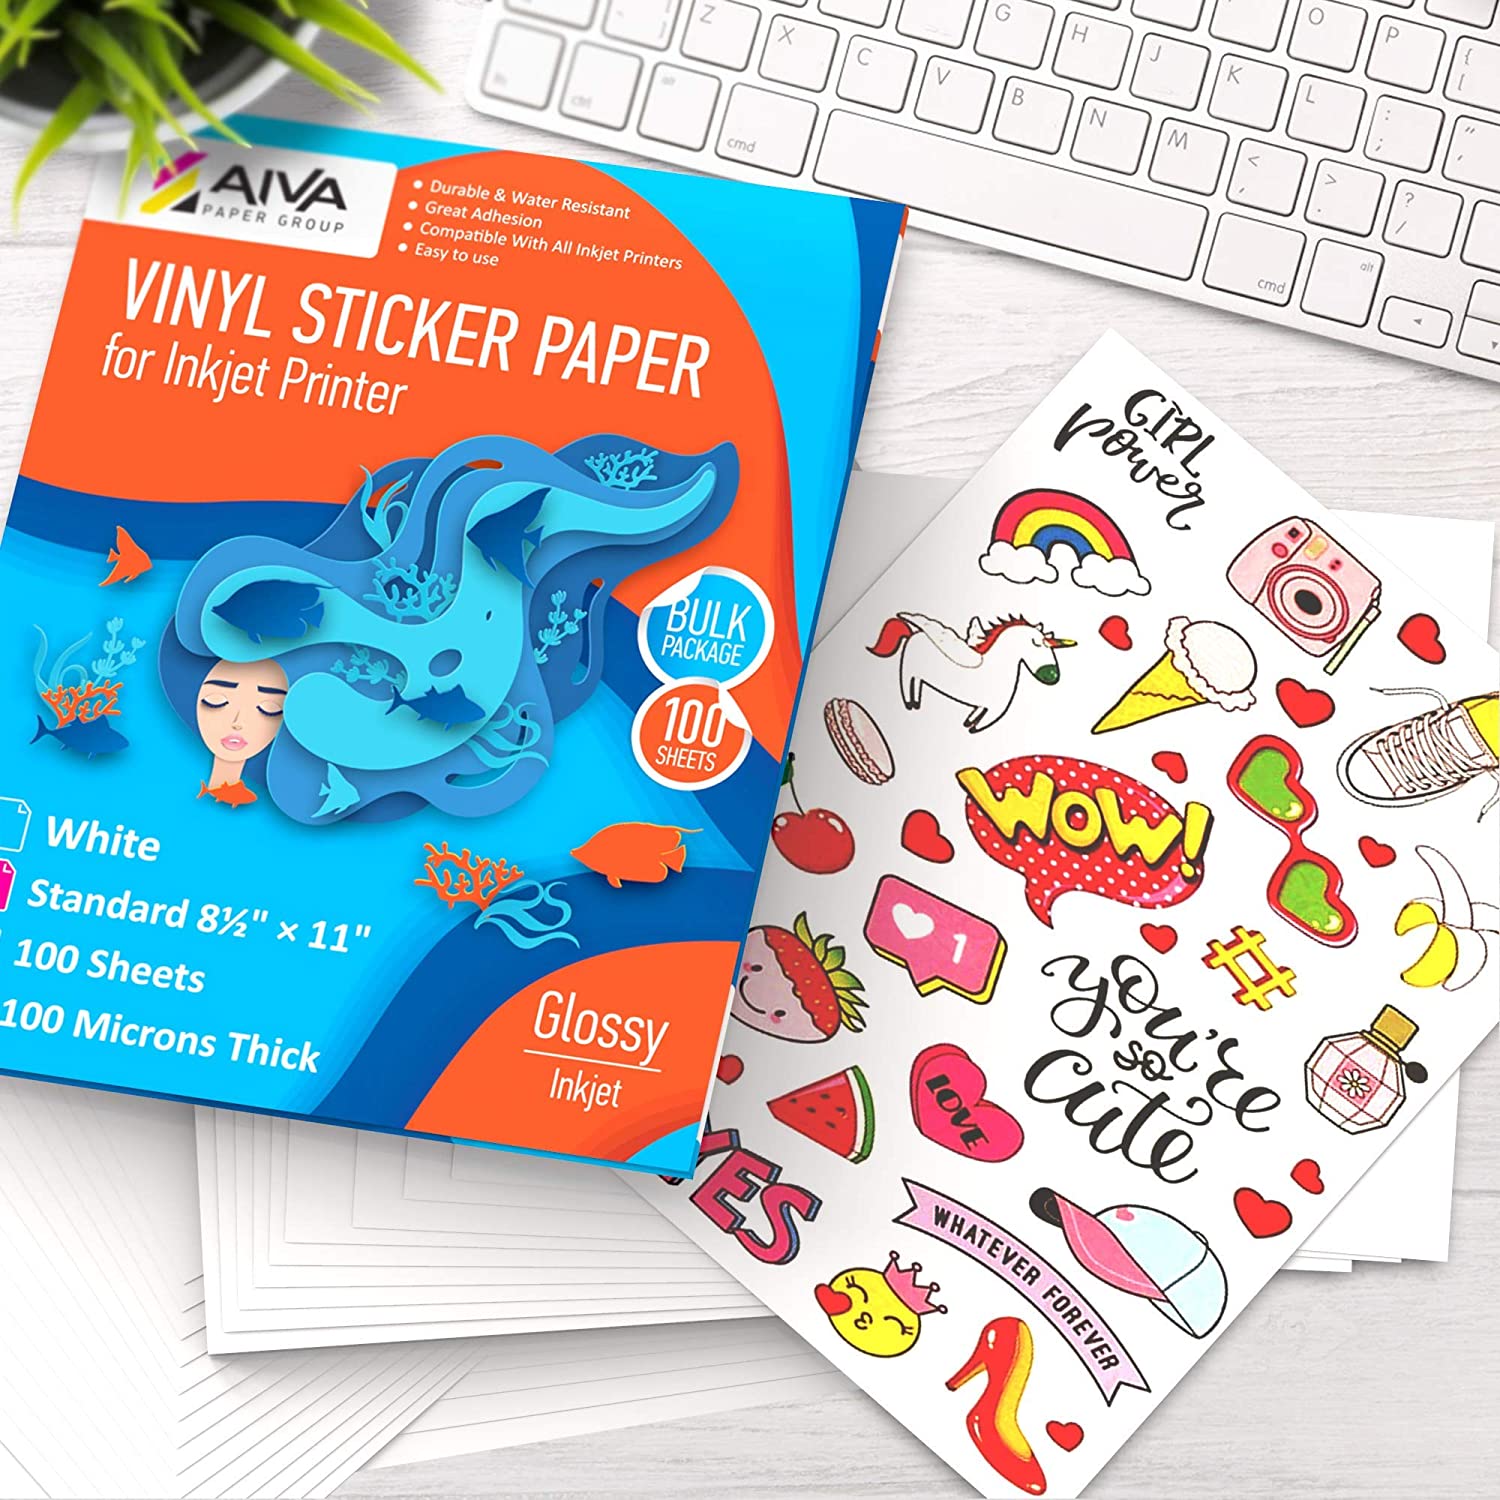 Printable Vinyl Sticker Paper Inkjet Glossy 100 sheets AIVA Paper Group